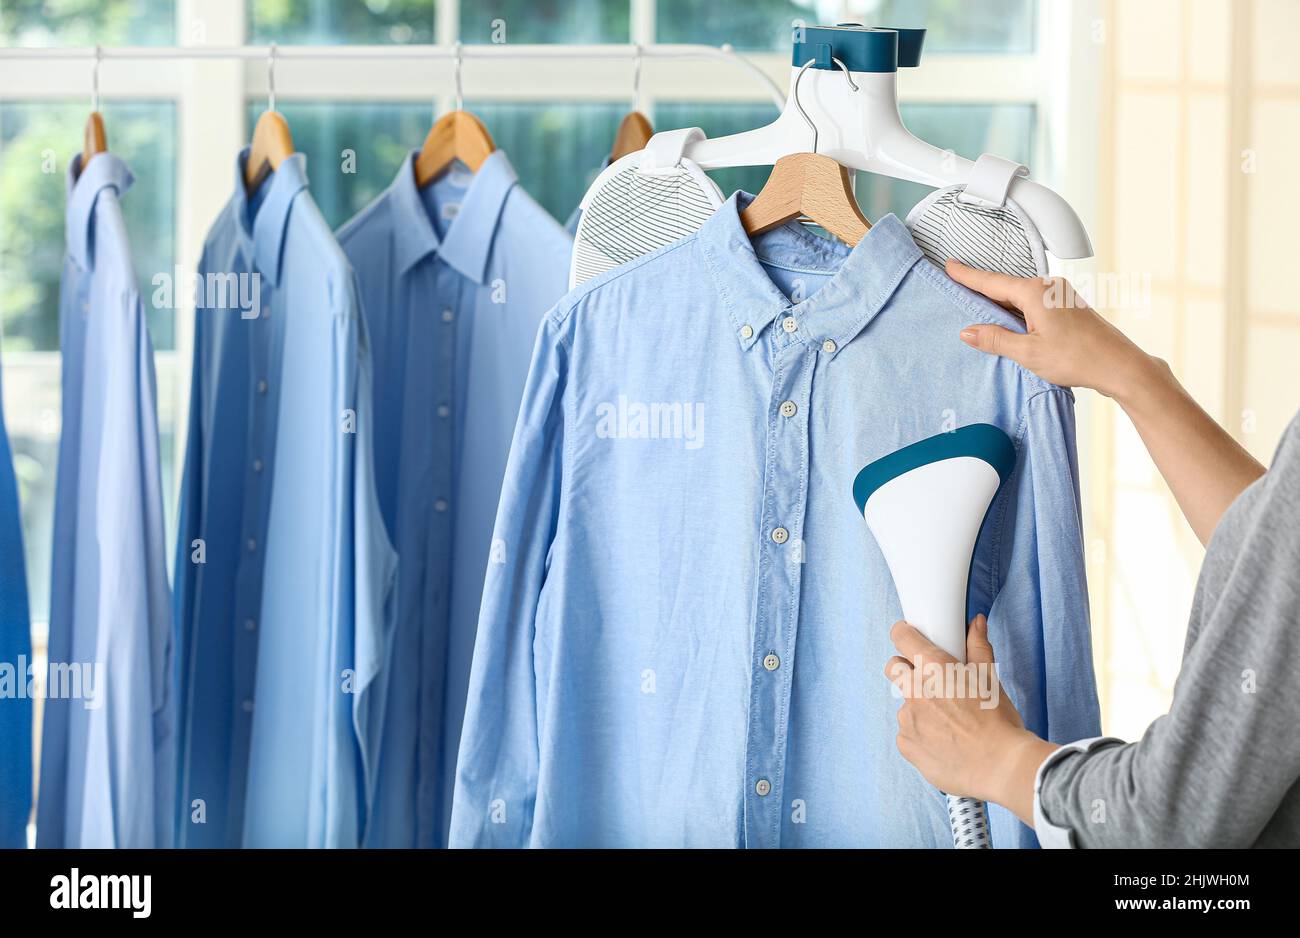 Frau bügelt Hemd mit Dampf bei der Trockenreinigung Stockfotografie - Alamy